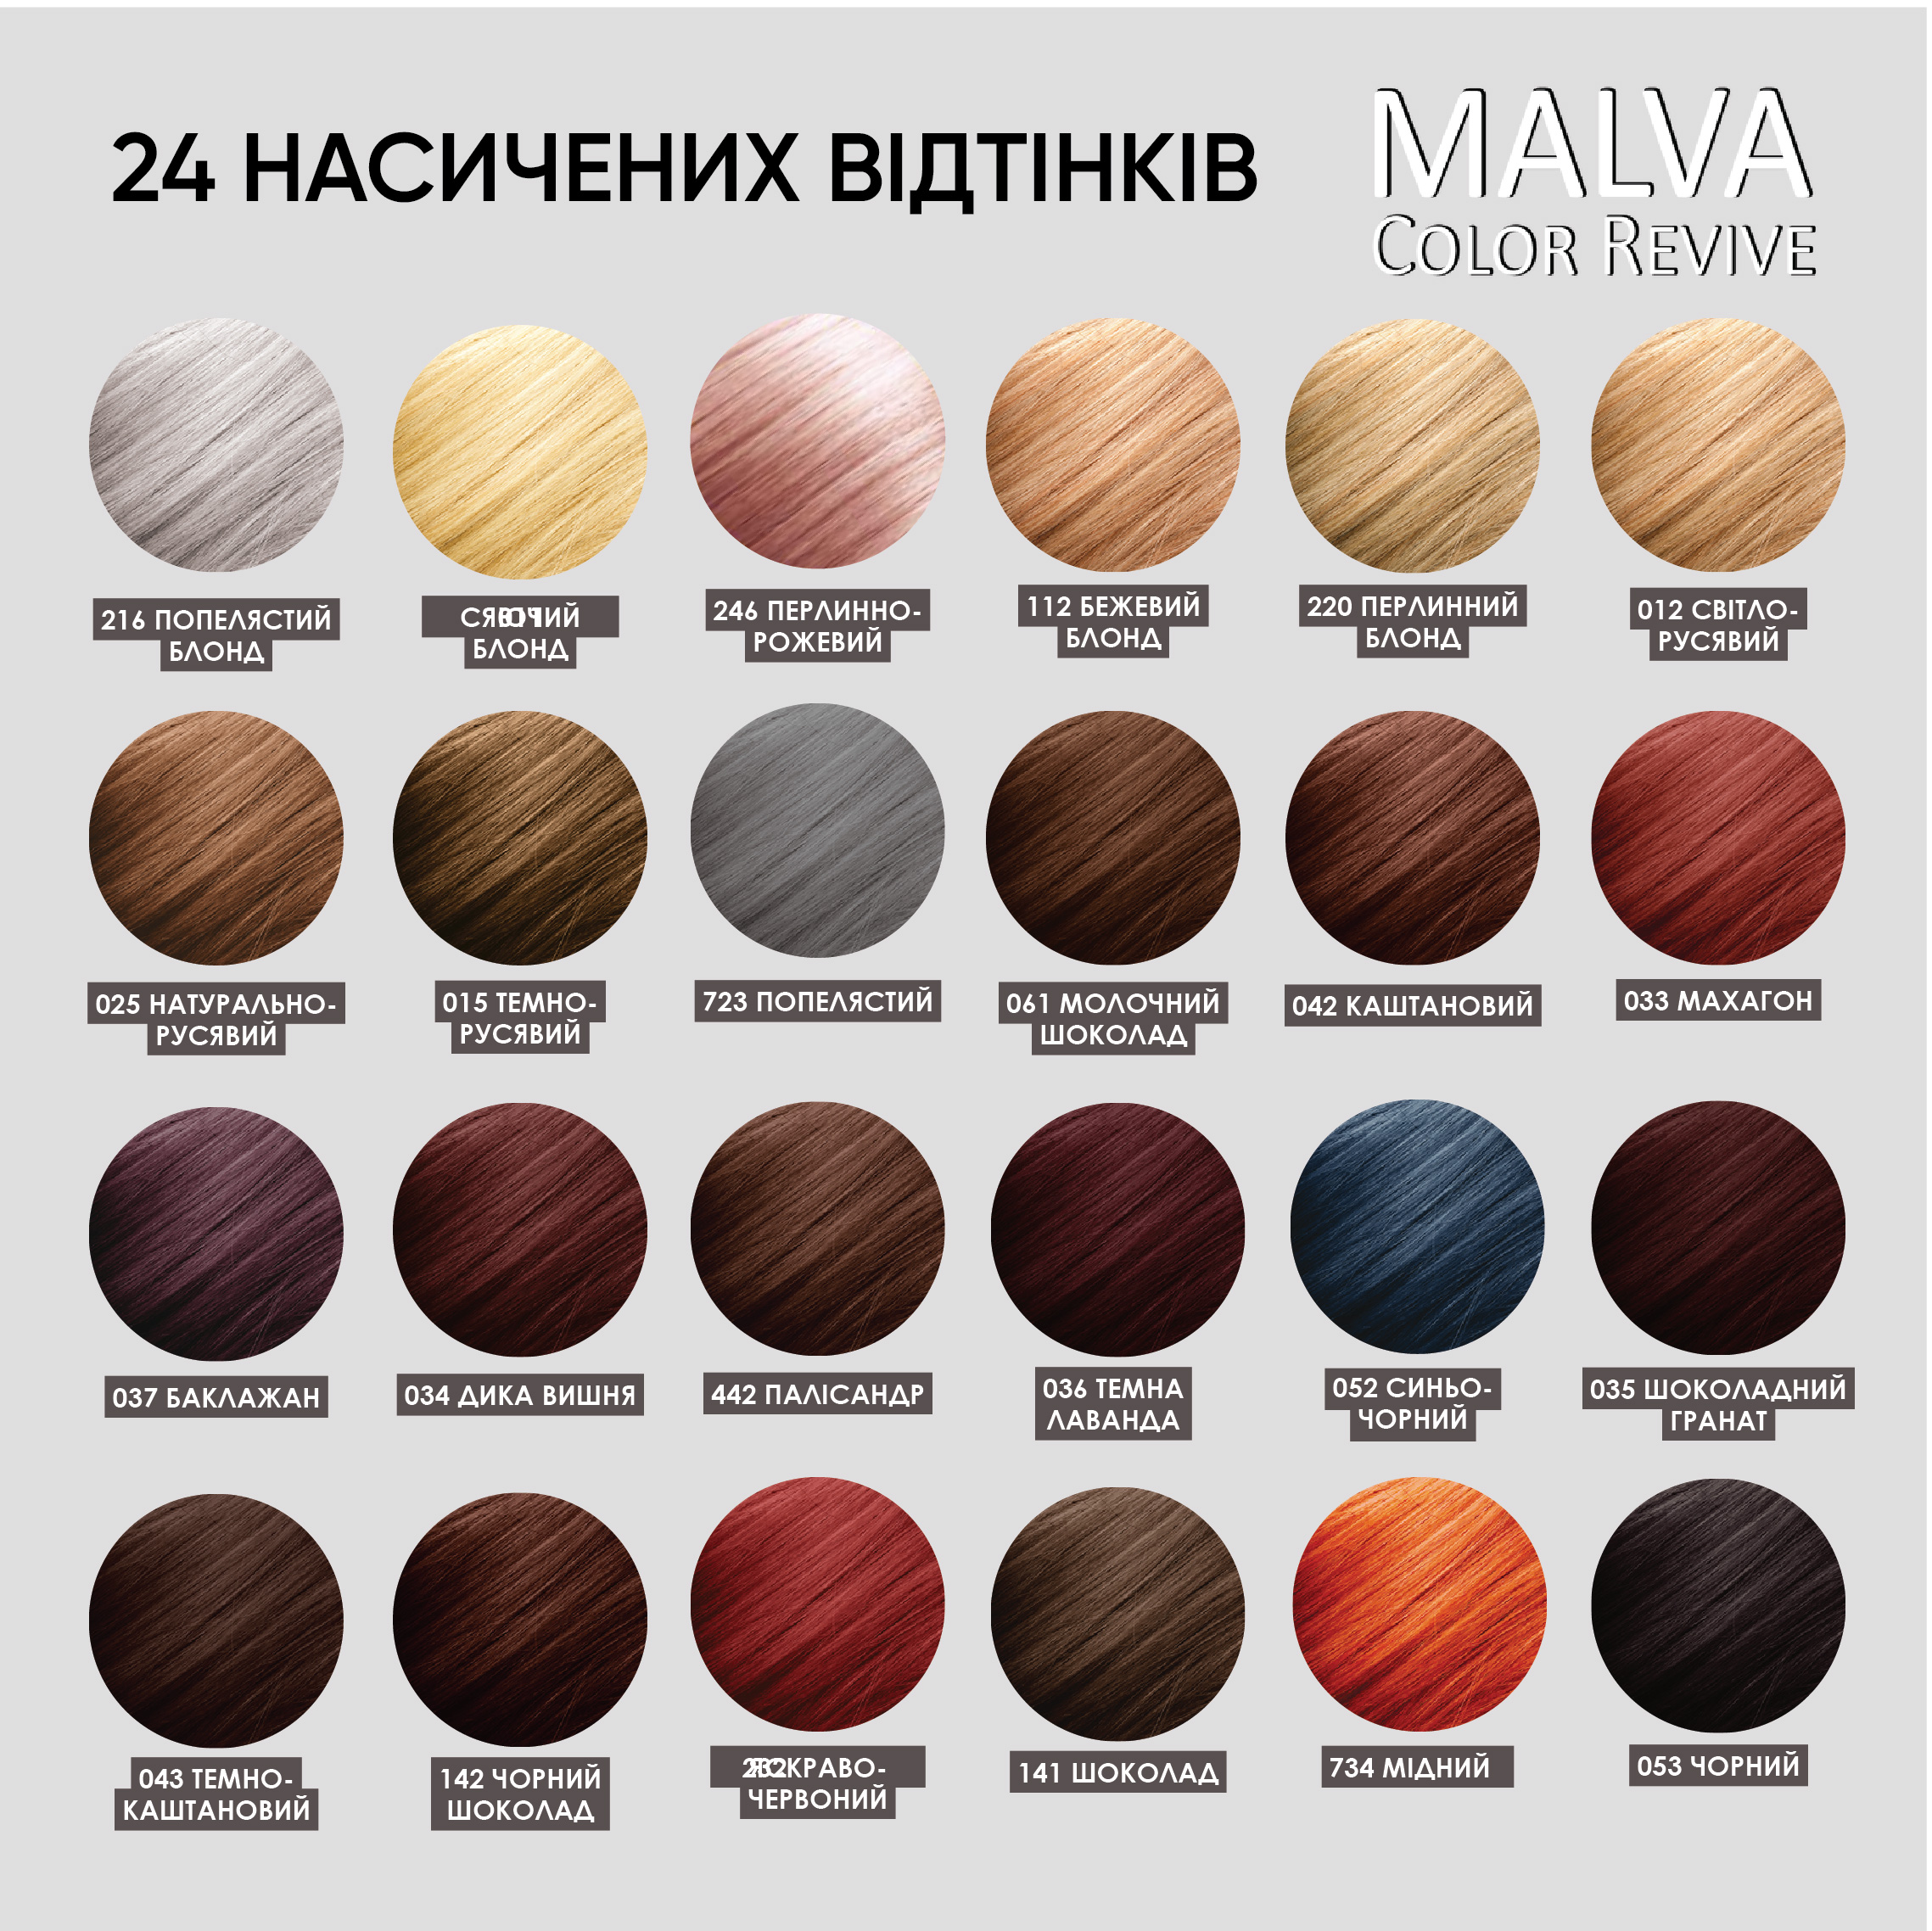 Устойчивая крем-краска для волос Malva Color Revive оттенок 033 Махагон - фото 6